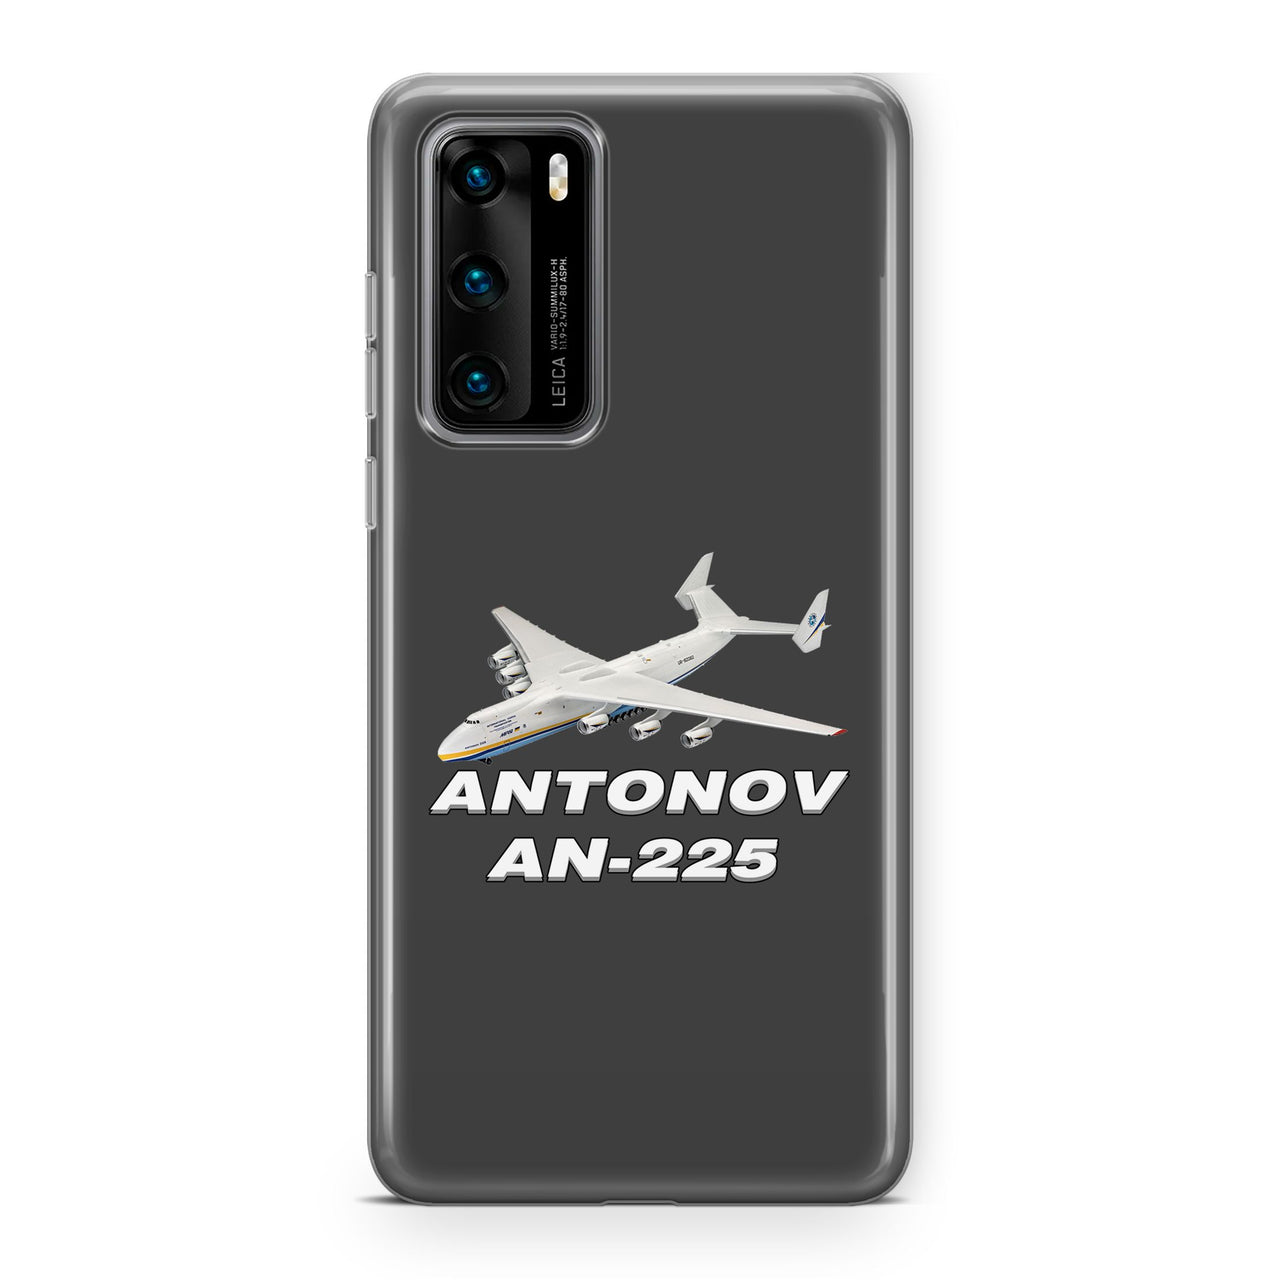 Antonov AN-225 (12) Designed Huawei Cases